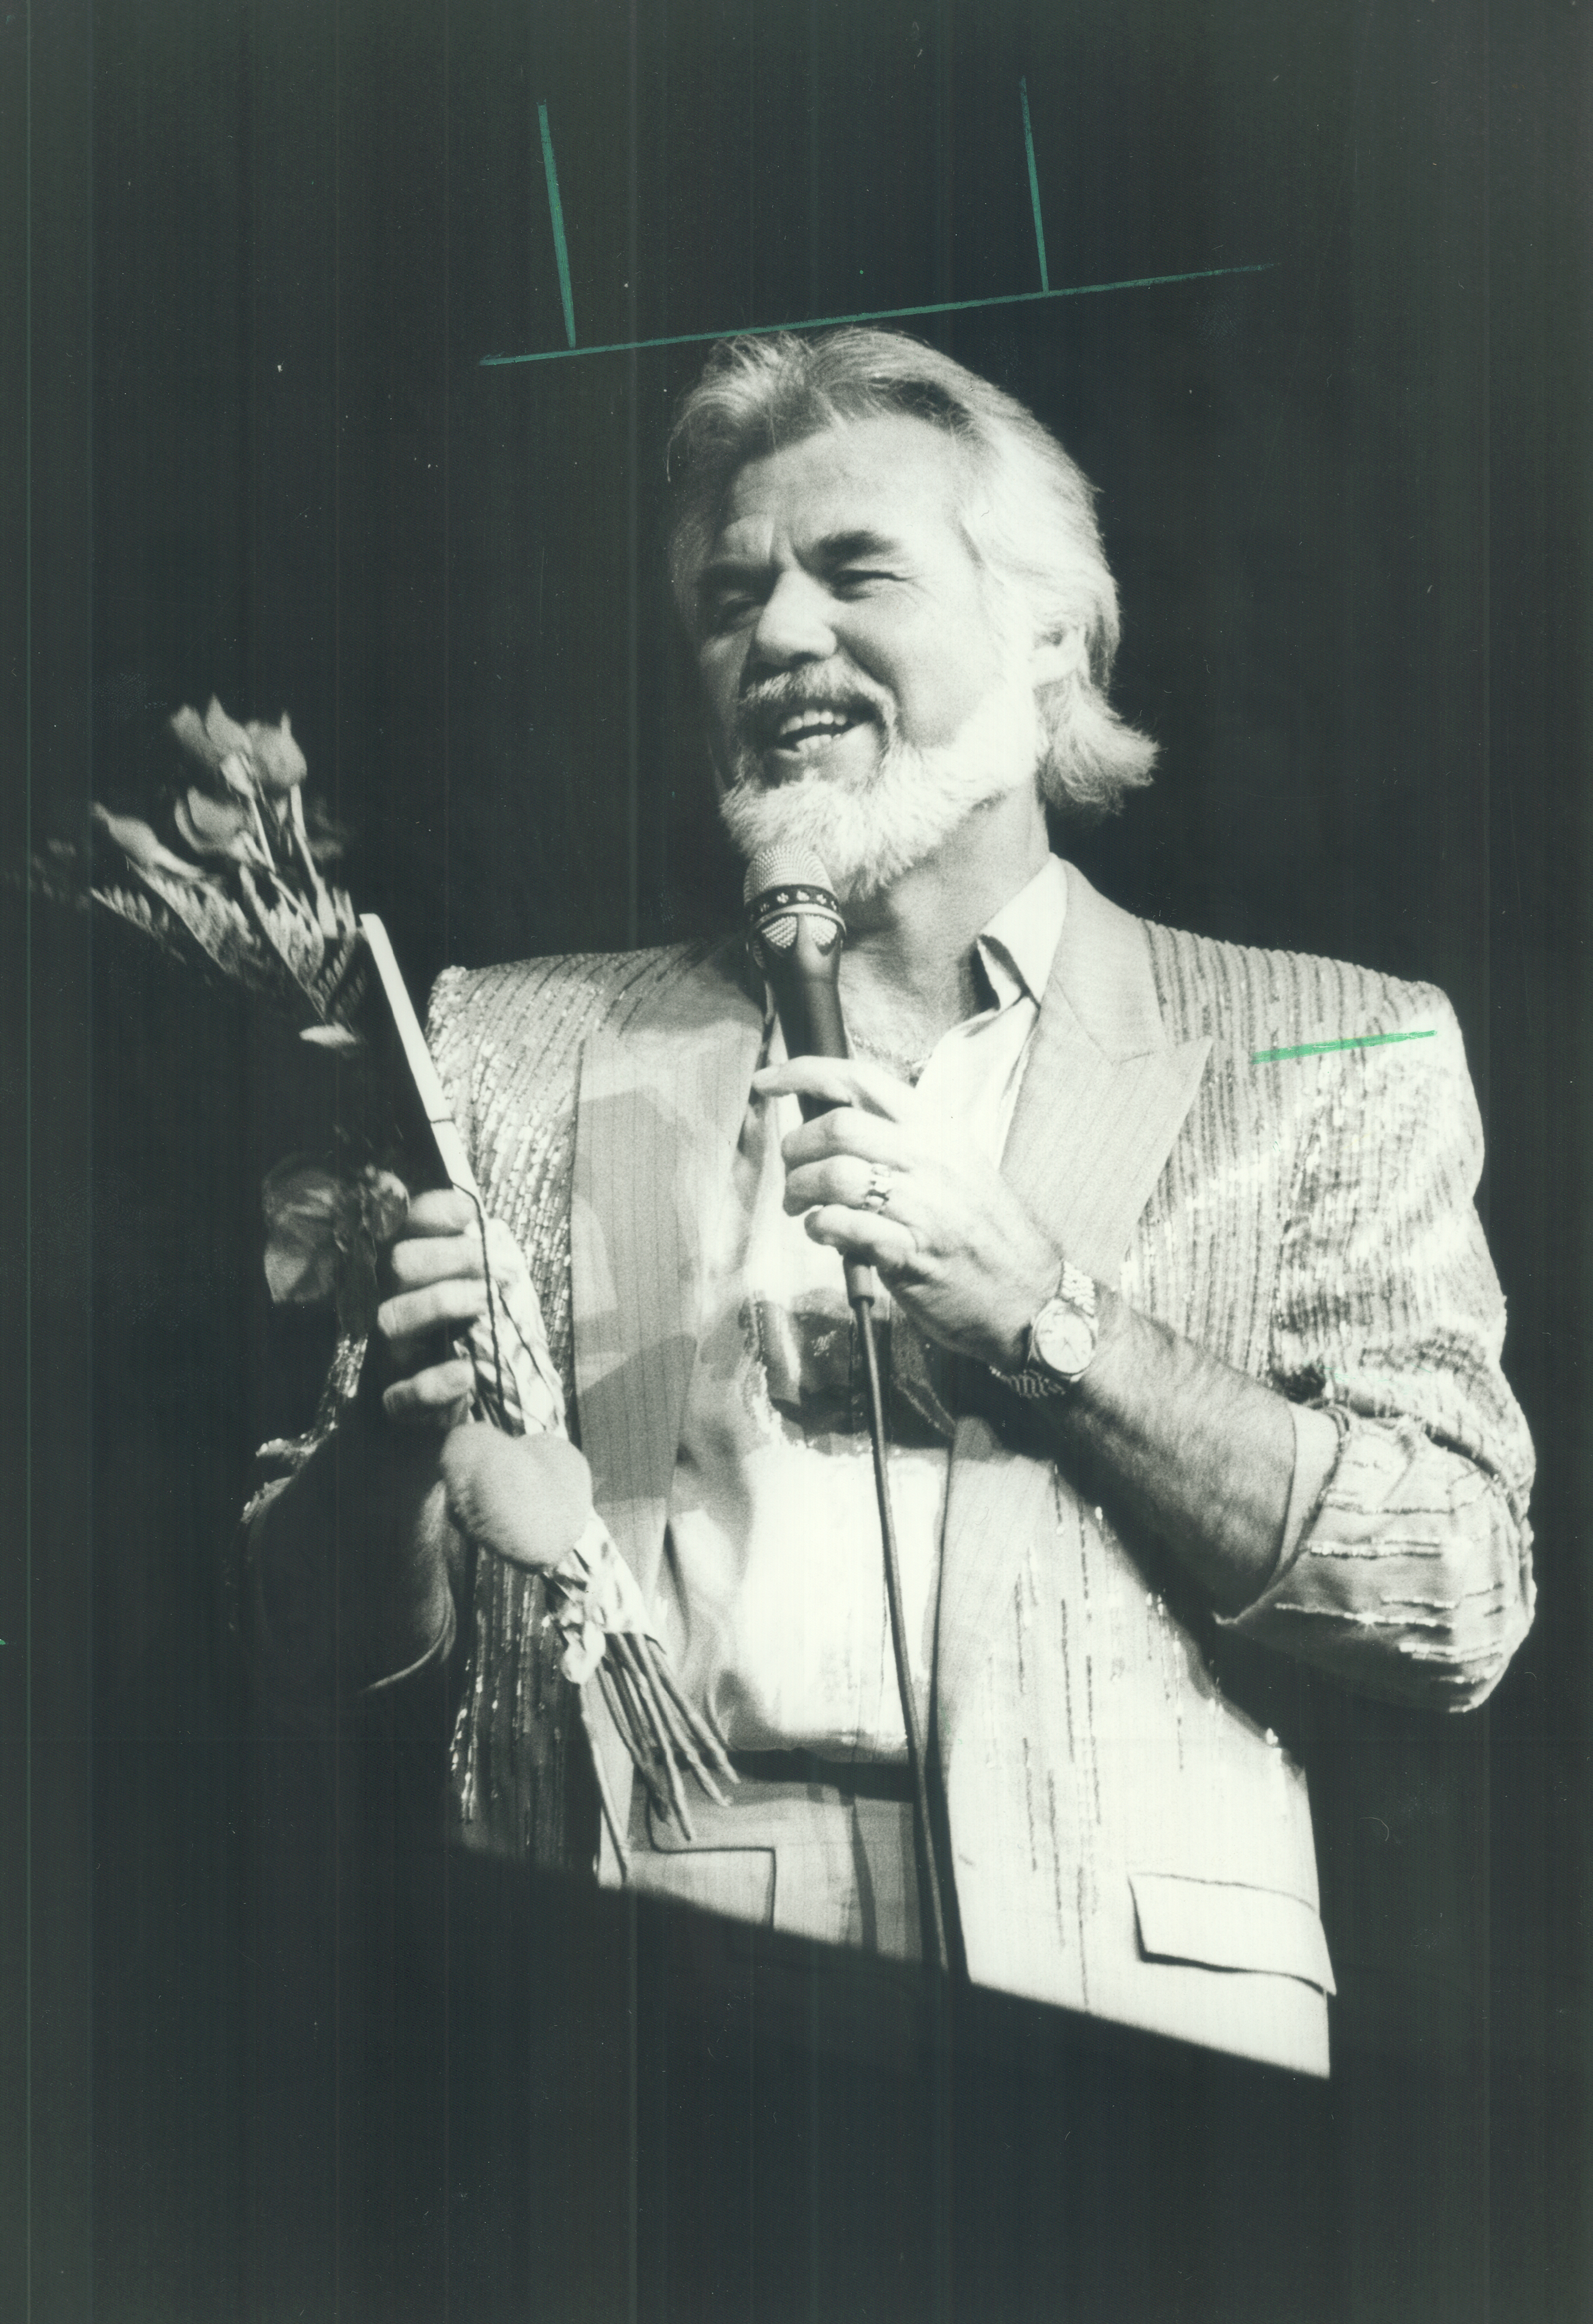 Der Musiker singt am 22. August 1985 auf der Tribüne der Canadian National Exhibition die Lieder, die er liebt | Quelle: Getty Images